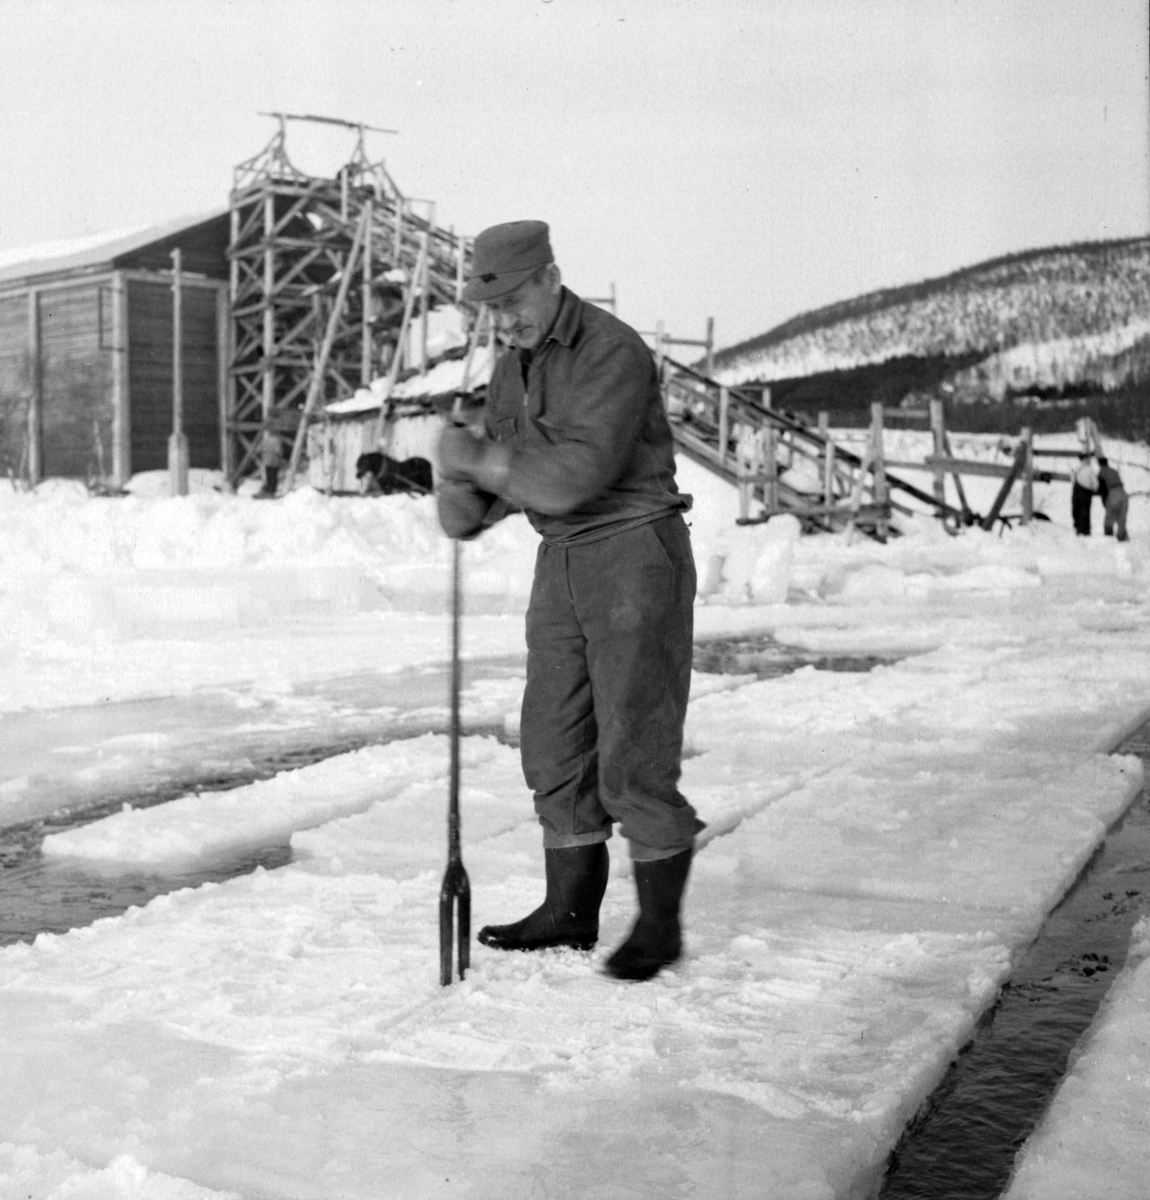 Isskjæring på Møkkelandsvannet, 1954. Johnny Jensen, Møkkeland, arbeider. Isen skulle brukes hos Bertheus Nilsen i byen.